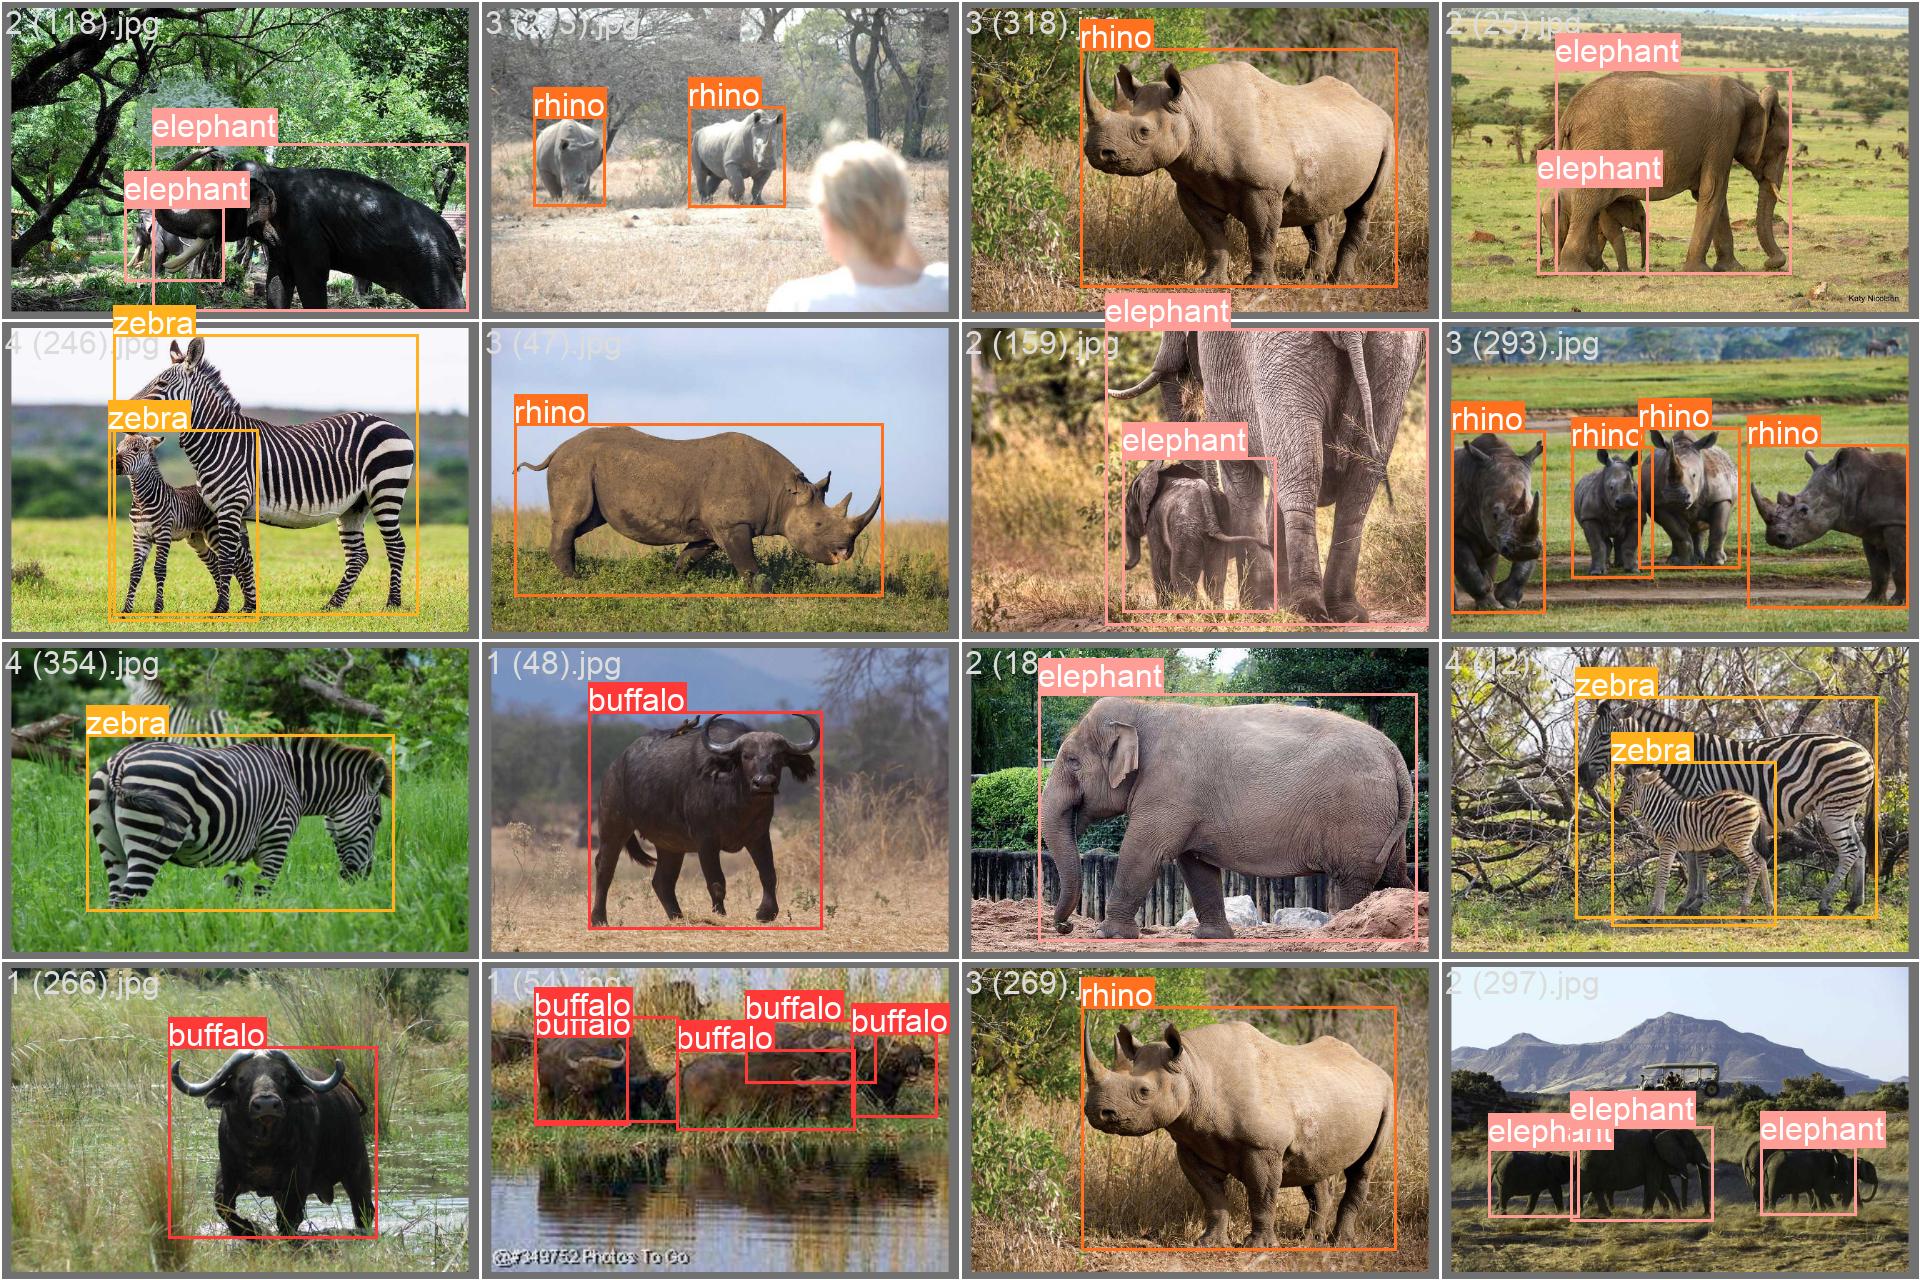 African wildlife dataset sample image